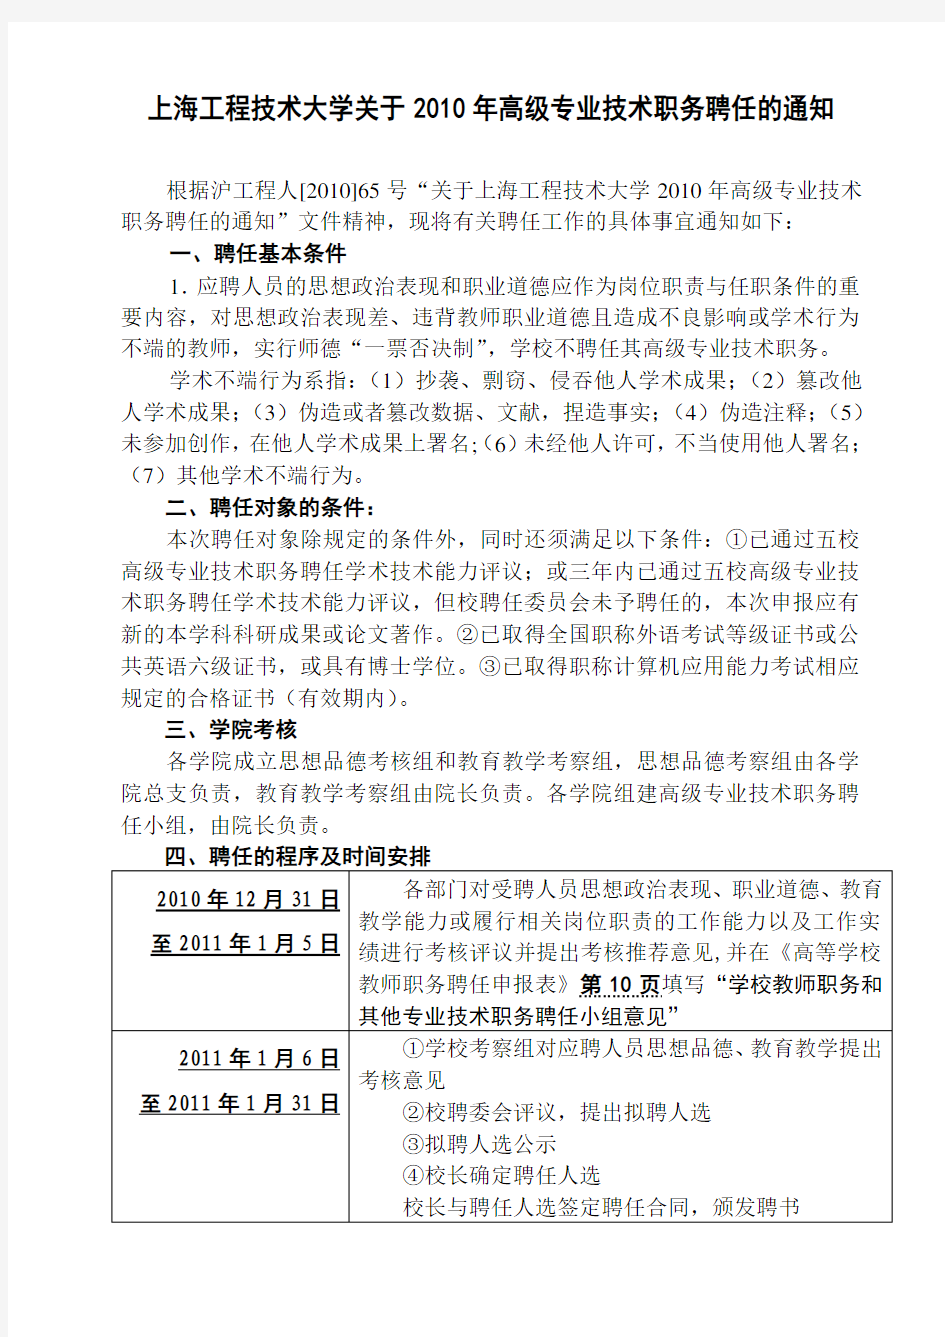 上海工程技术大学关于 2010 年高级专业技术职务聘任的通知